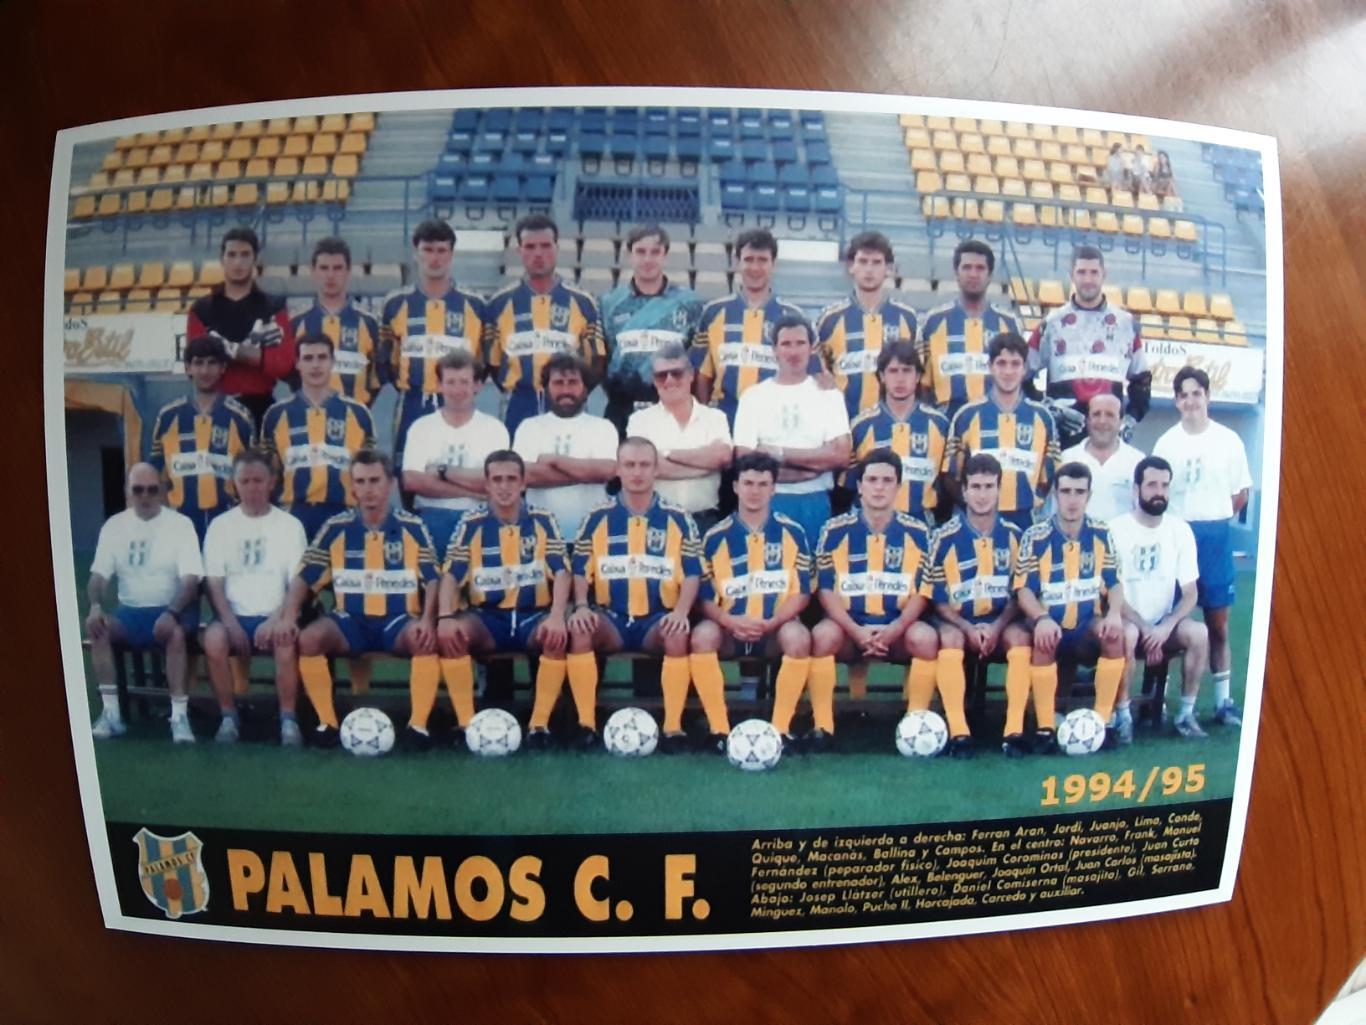 PALAMOS 1994/95 (SPAIN)